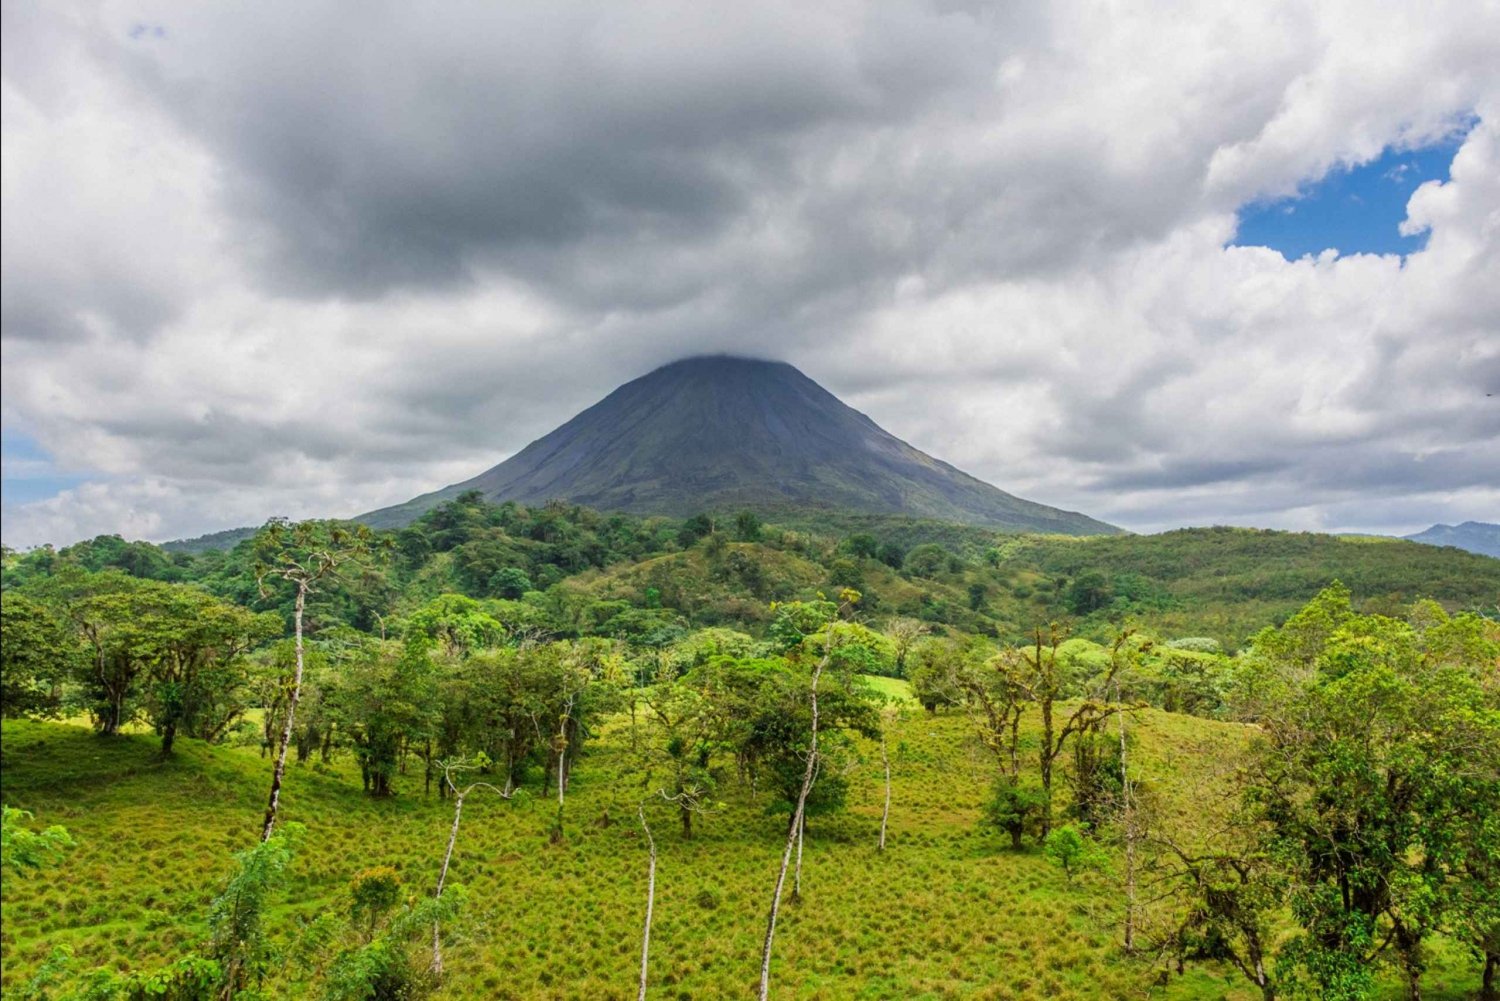 Alajuela: 4 timers vandretur i Arenals regnskov i 4 timer